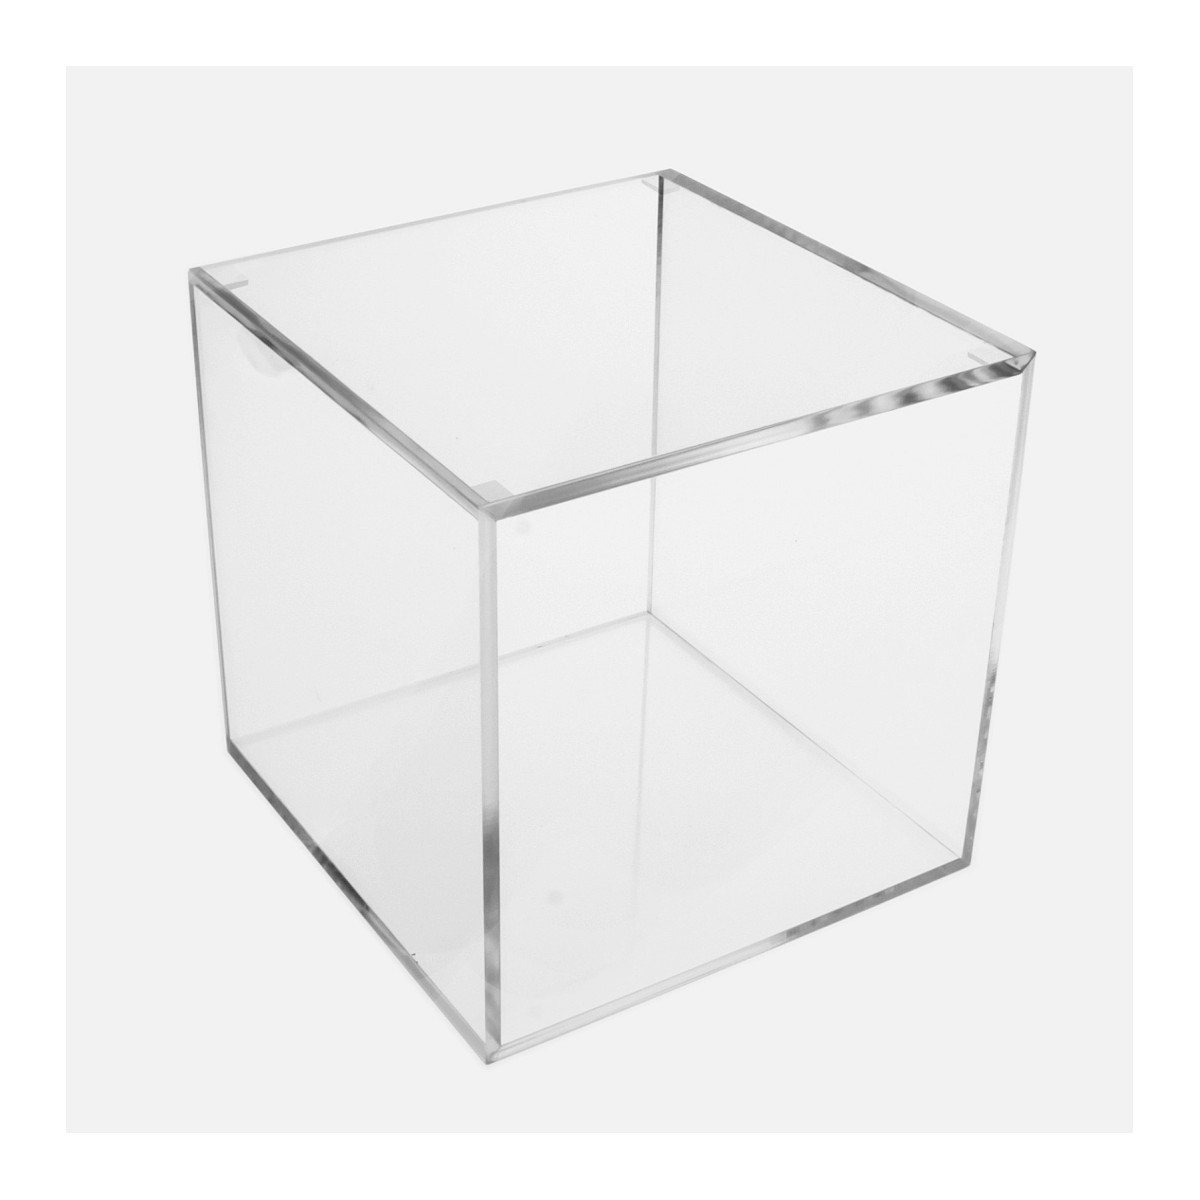 Cubo 5 Lati Chiusi + Coperchio Appoggiato in plexiglass trasparente -  Spessore 5